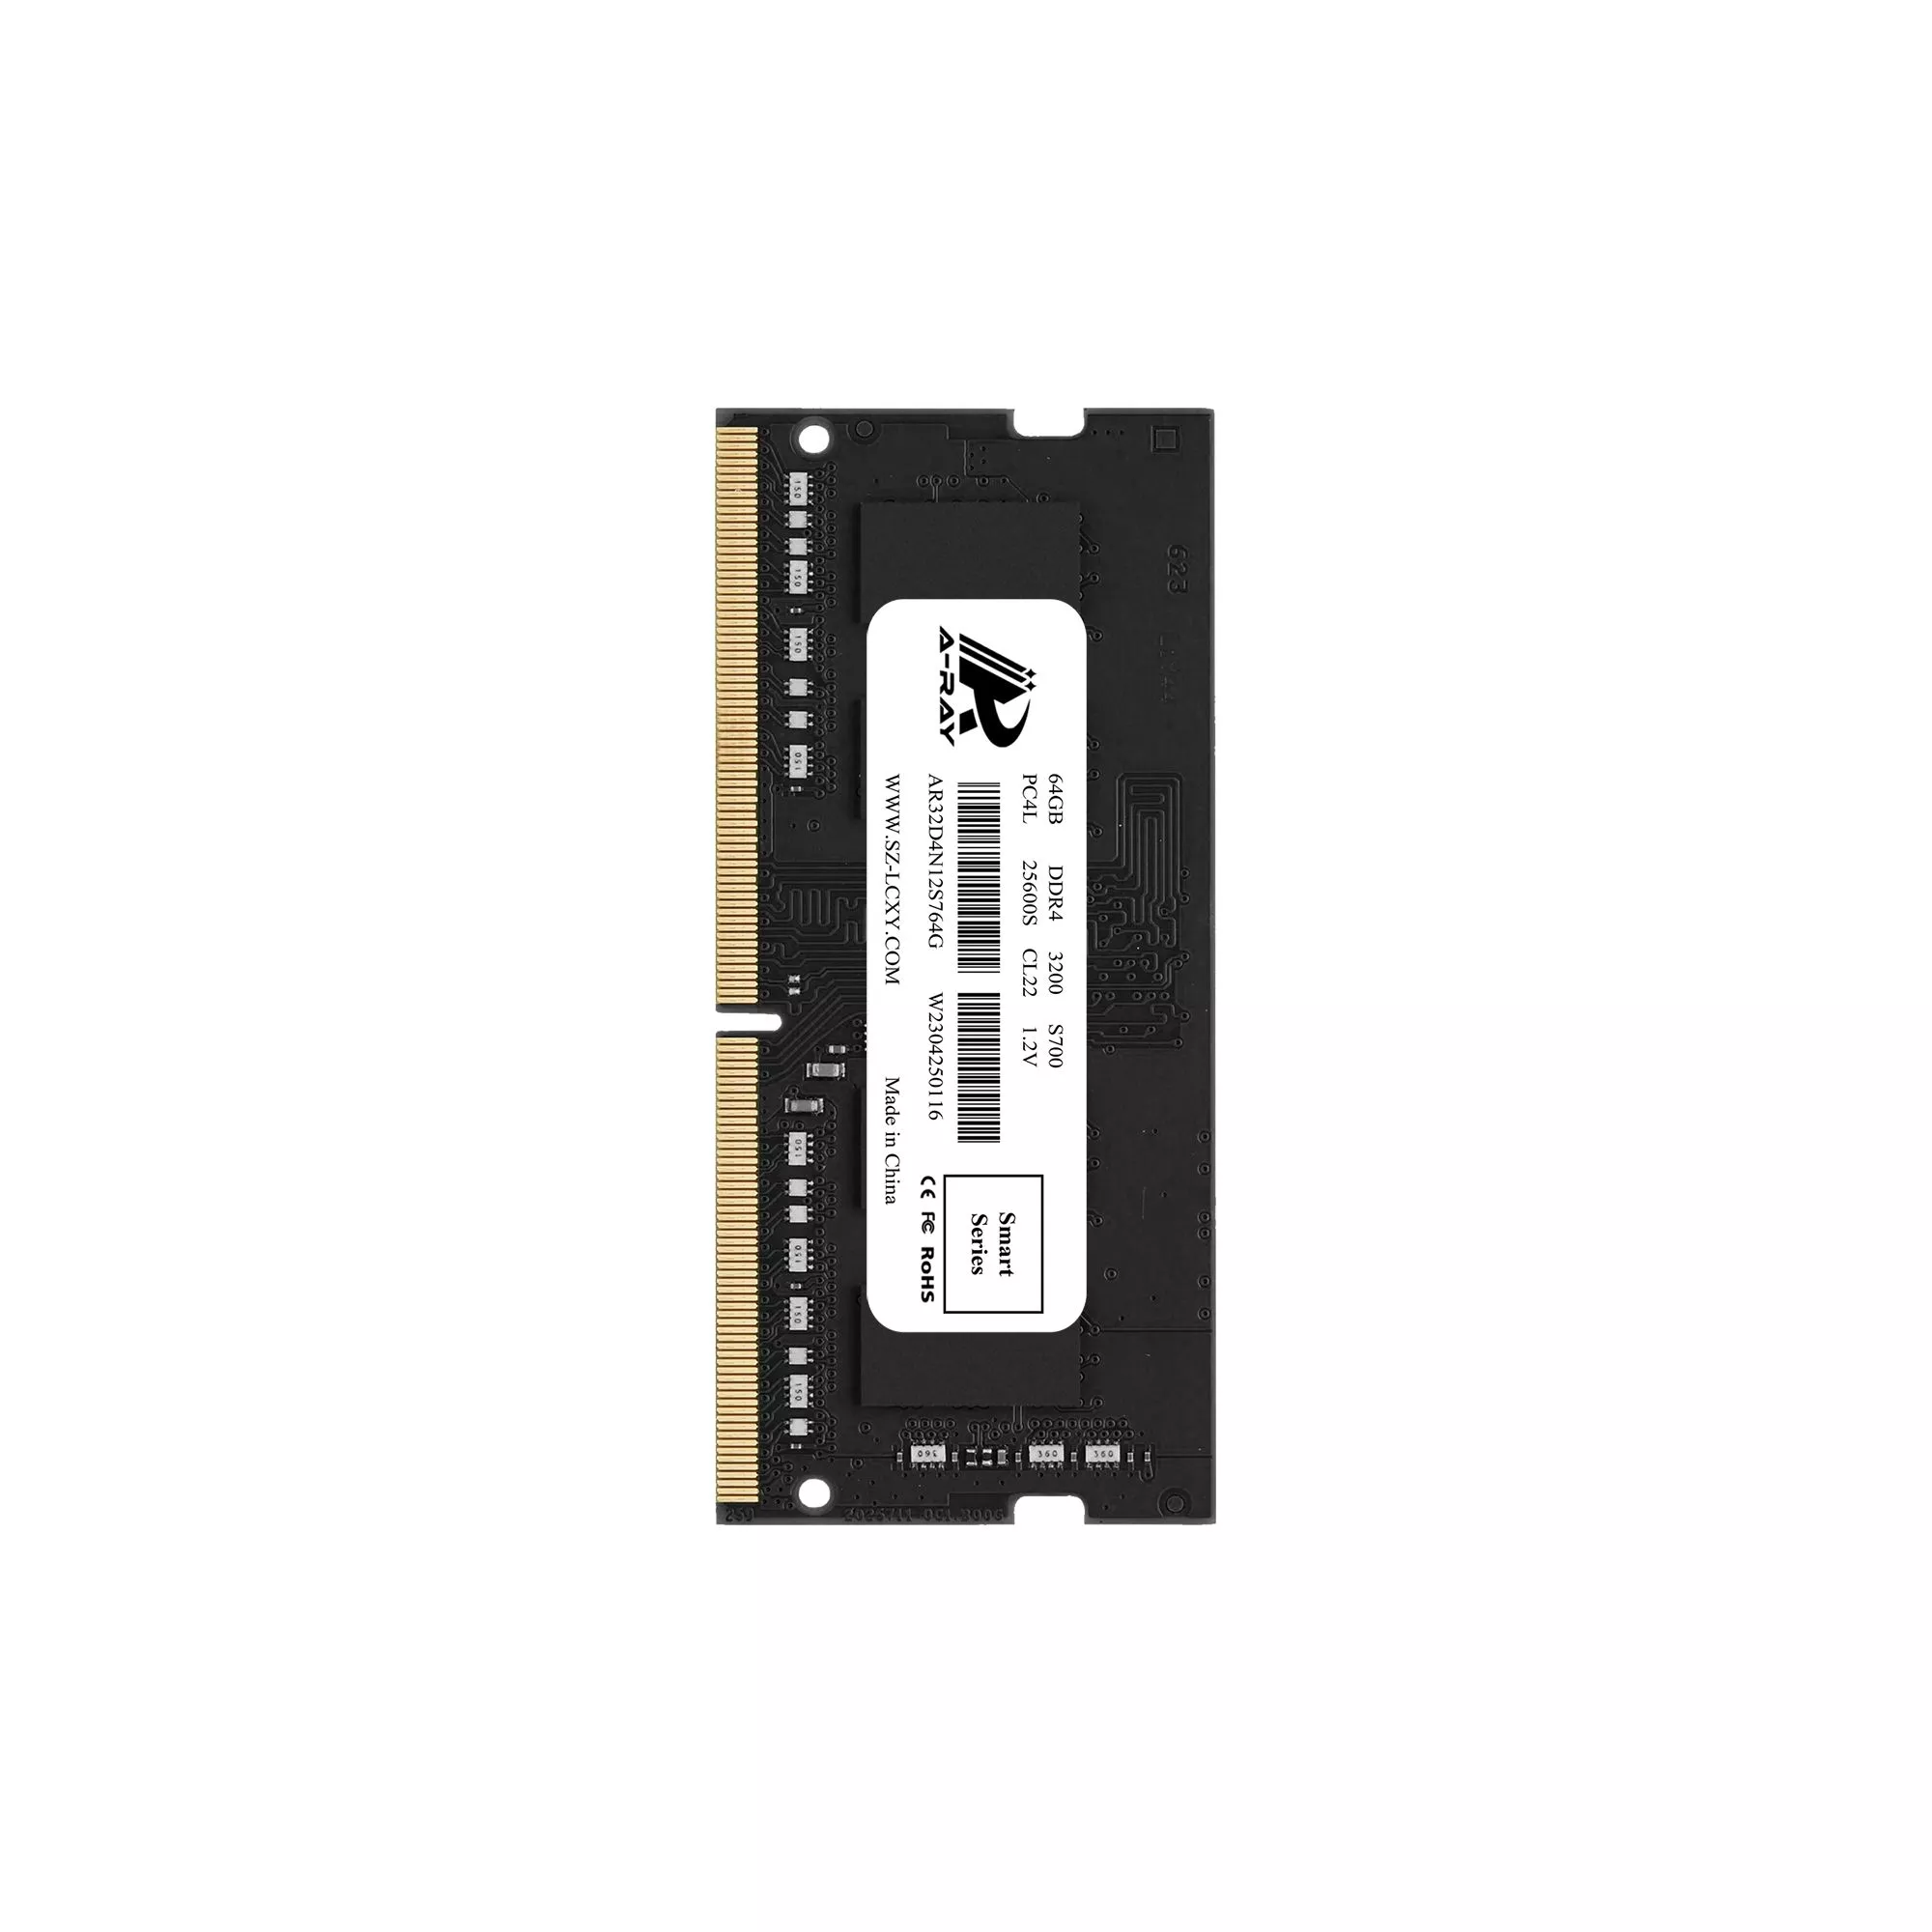 Bộ nhớ trong Ram A-Ray 64GB DDR4 Bus 3200 Mhz Laptop S700 25600 MB/s P/N: AR32D4N12S764G